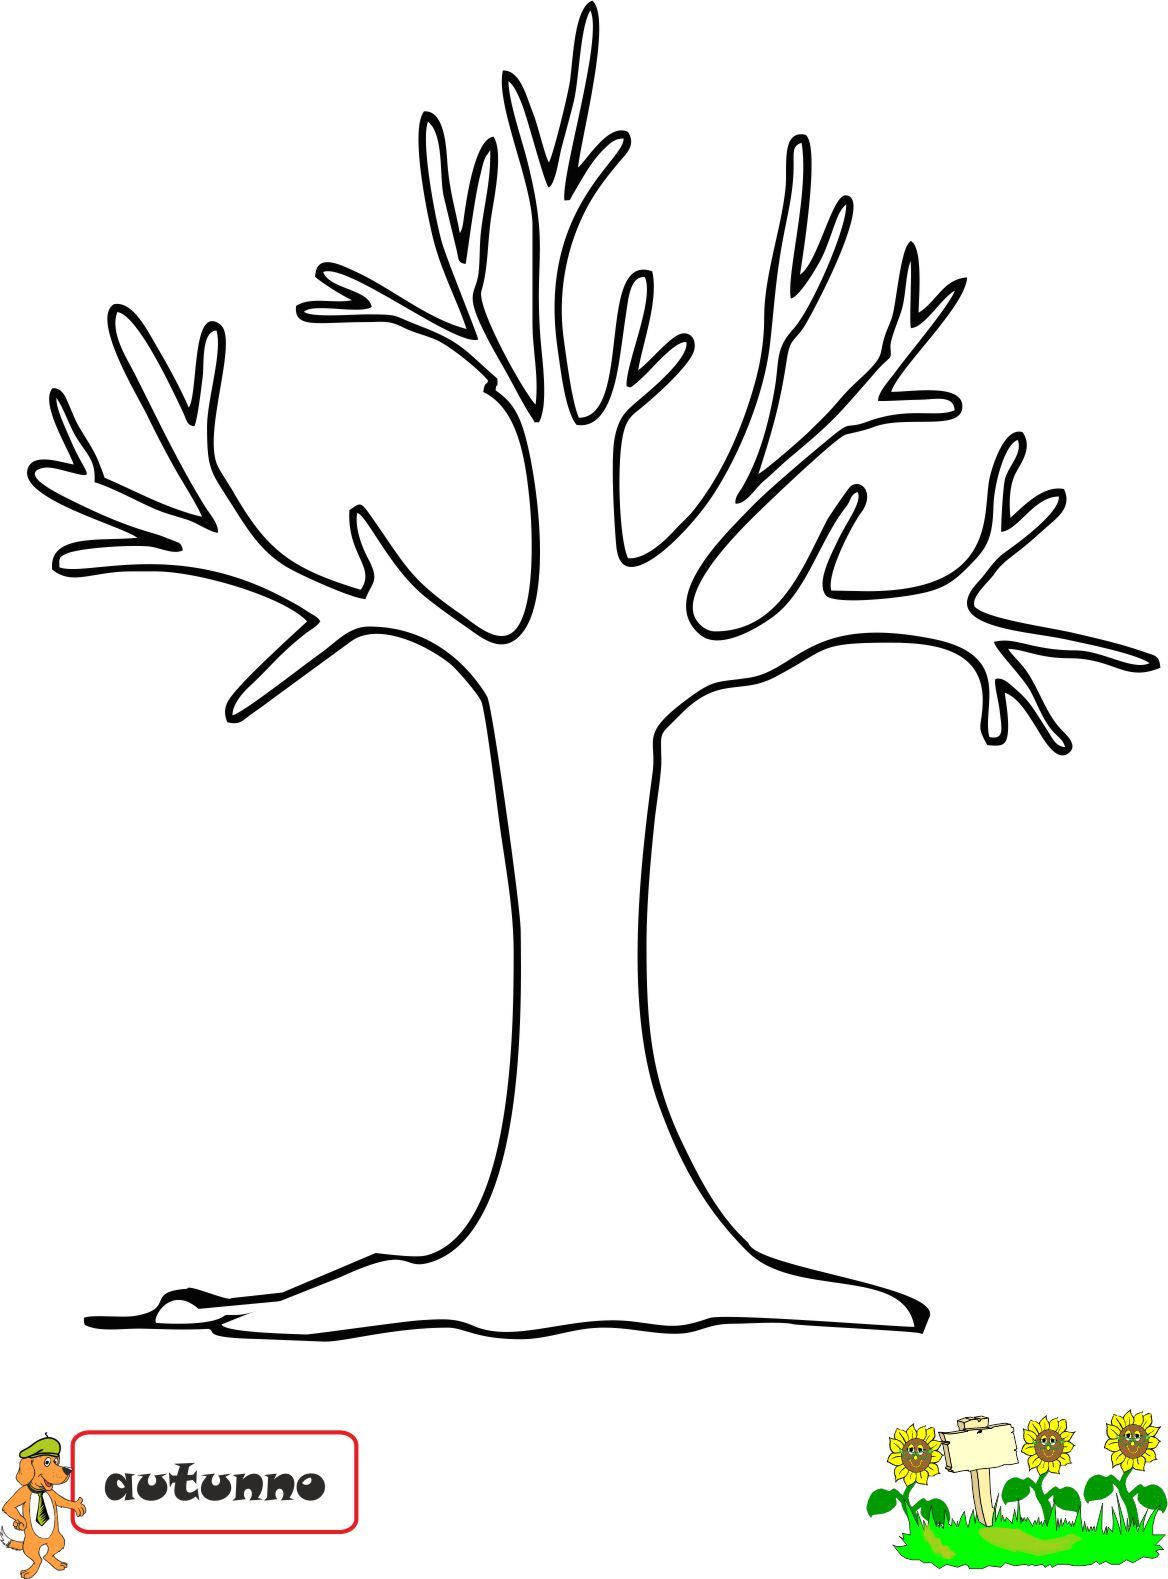 Ствол дерева рисунок для аппликации: ствол из цветной бумаги. Поделки без листьев и объемная аппликация, дерево-рука и обрывная поделка для детей, другие идеи